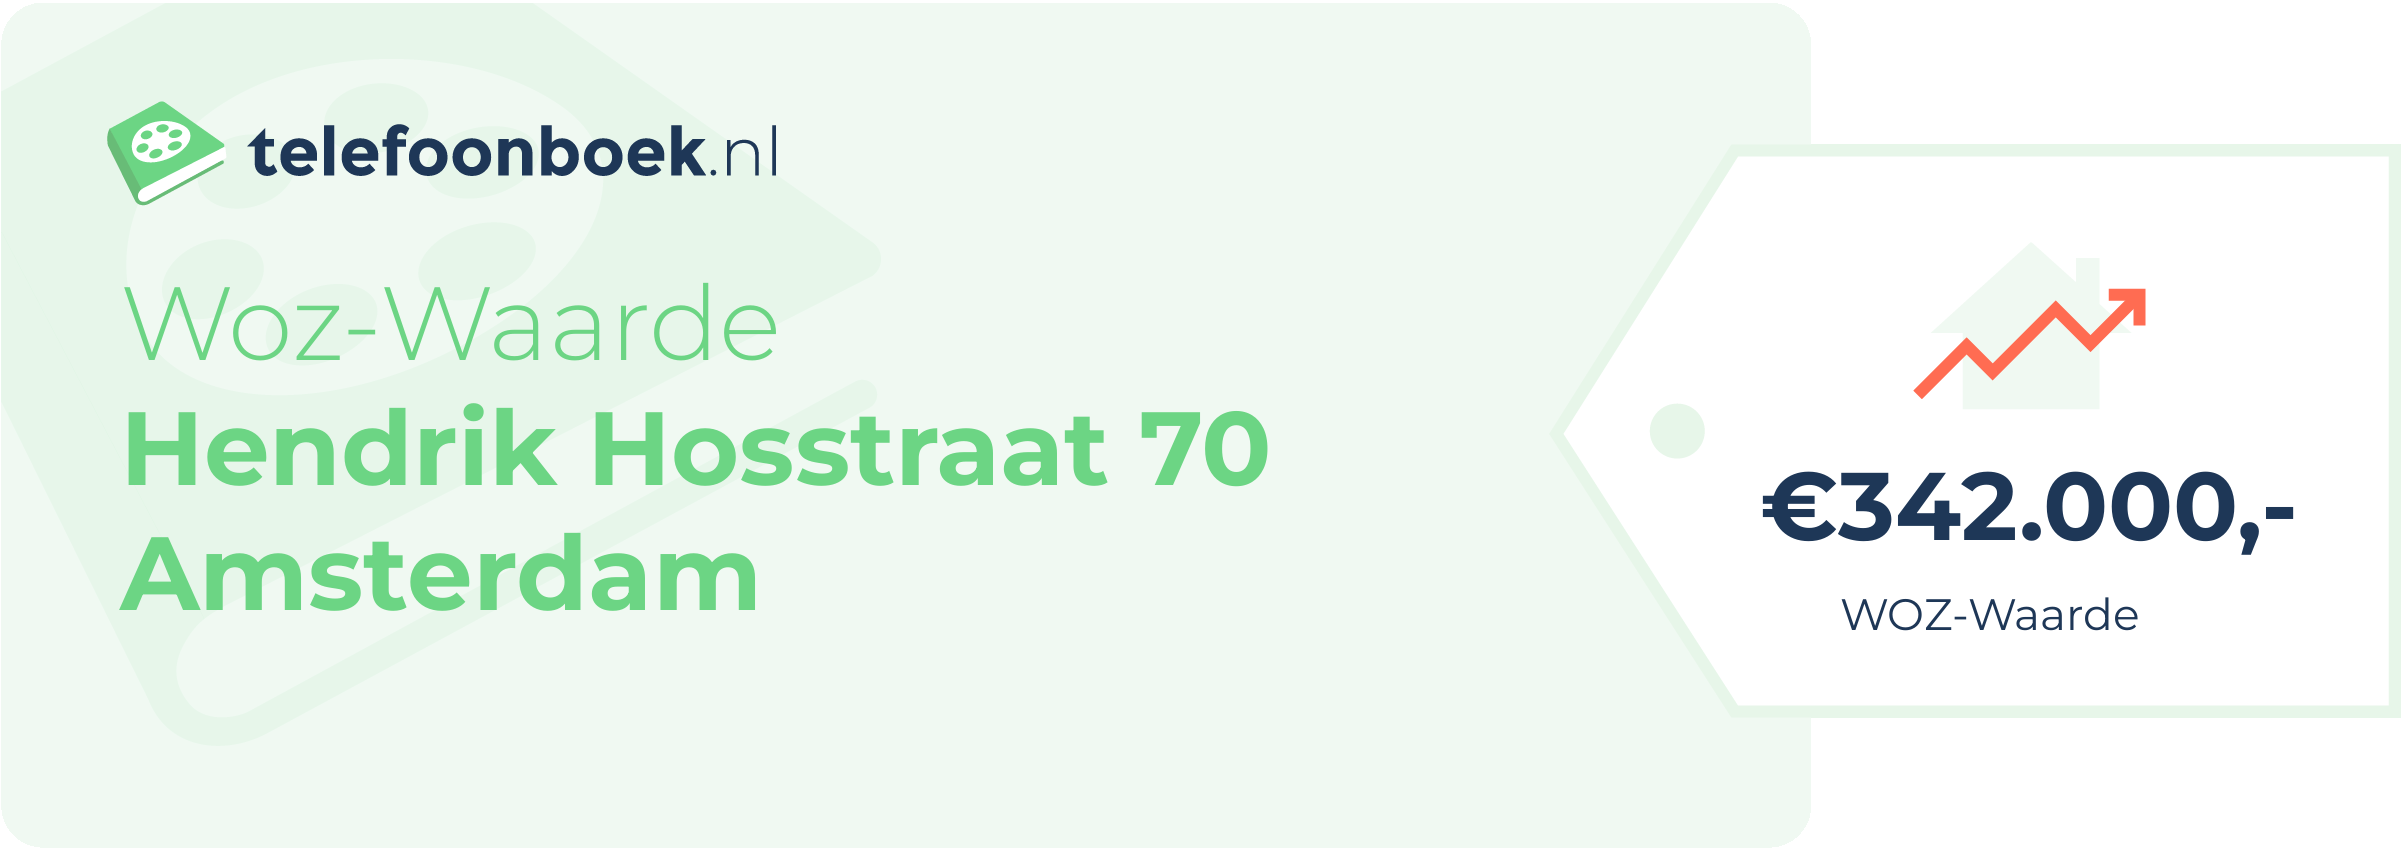 WOZ-waarde Hendrik Hosstraat 70 Amsterdam